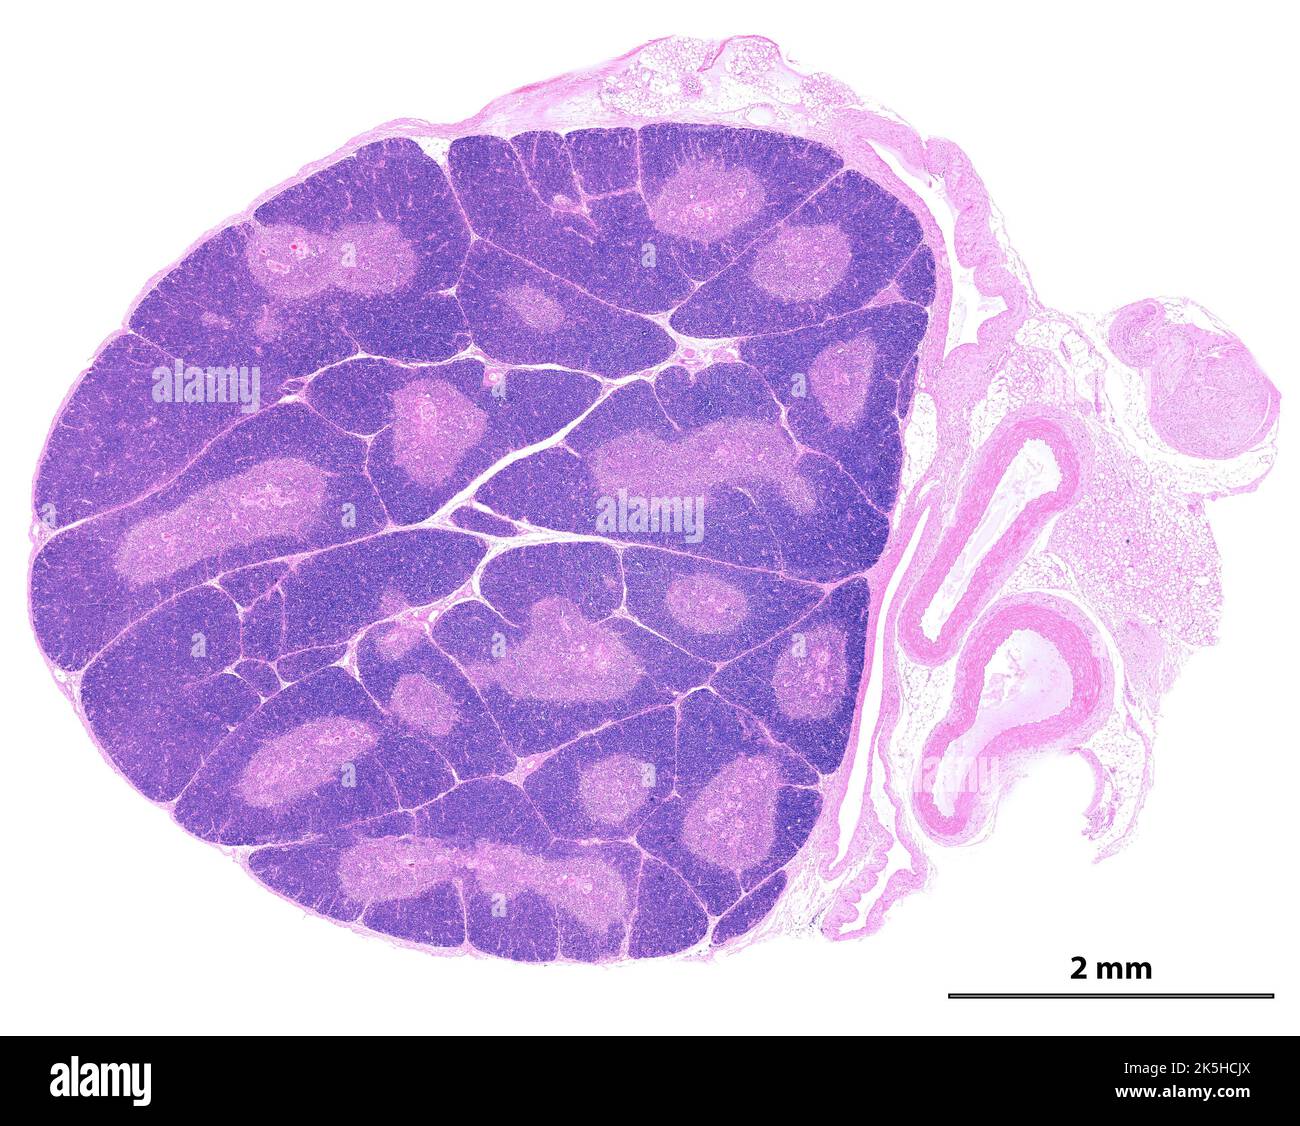 Mikroskopmikroskop mit geringer Leistung, der einen jungen Thymus zeigt. Die Organisation in Lobbies ist deutlich zu sehen. In jedem Webel ist die periphere Kortex App Stockfoto